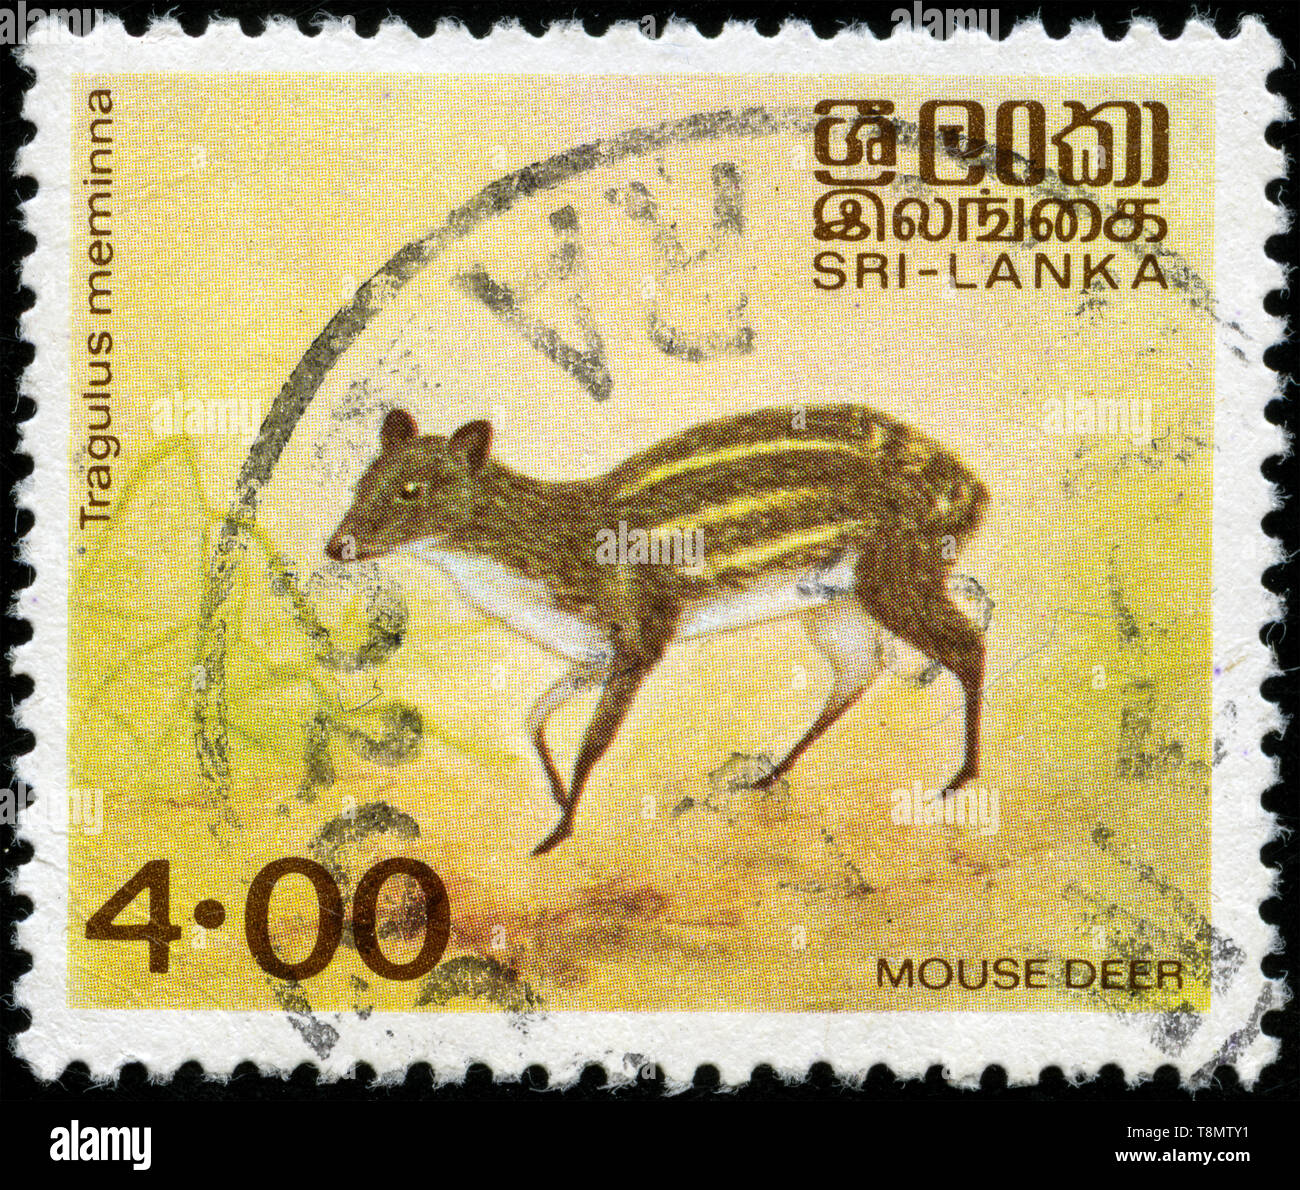 Timbre-poste du Sri Lanka dans les animaux indigènes série émise en 1981 Banque D'Images